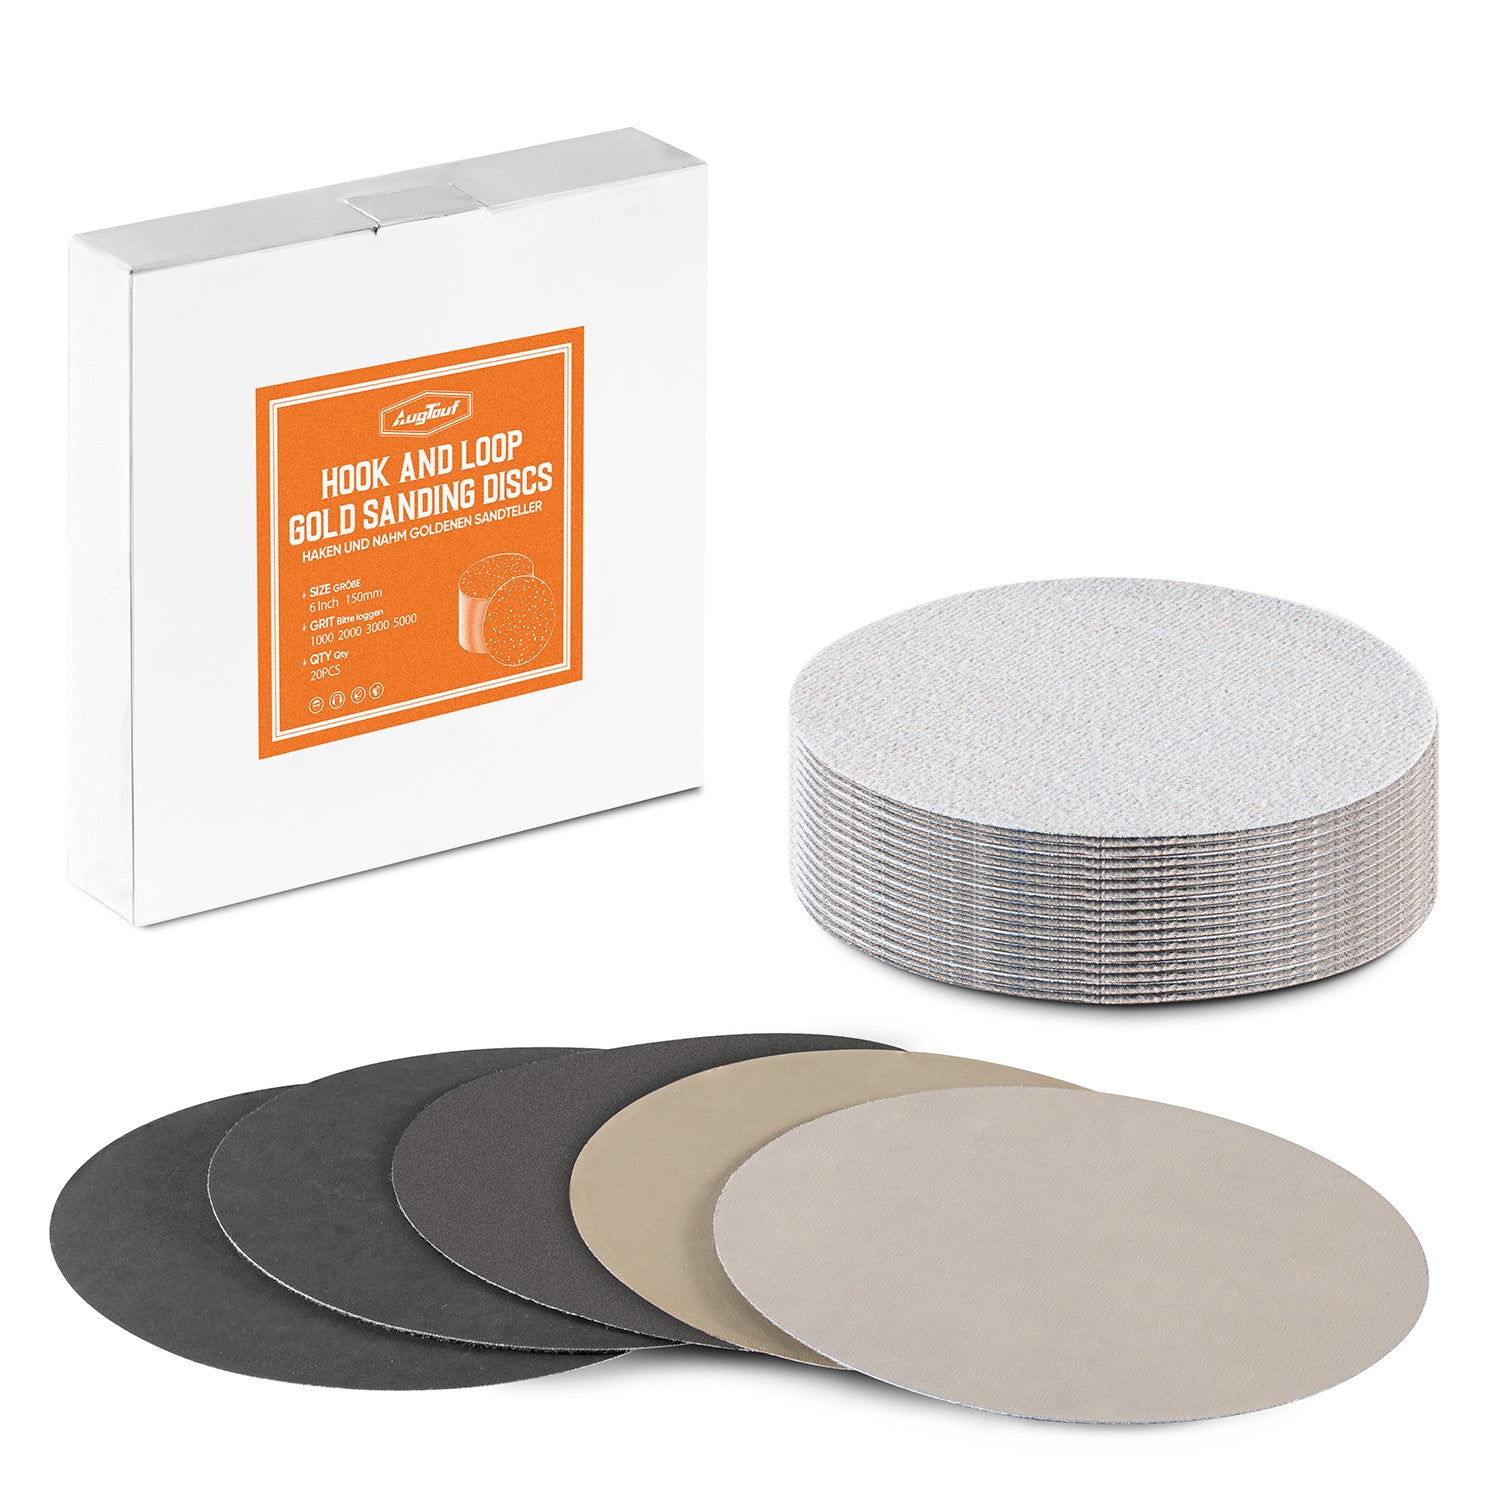 [Bulk Buy] 6 inch Hook and Loop Sanding Discs, 1000Grit, Waterproof Silicon Carbide